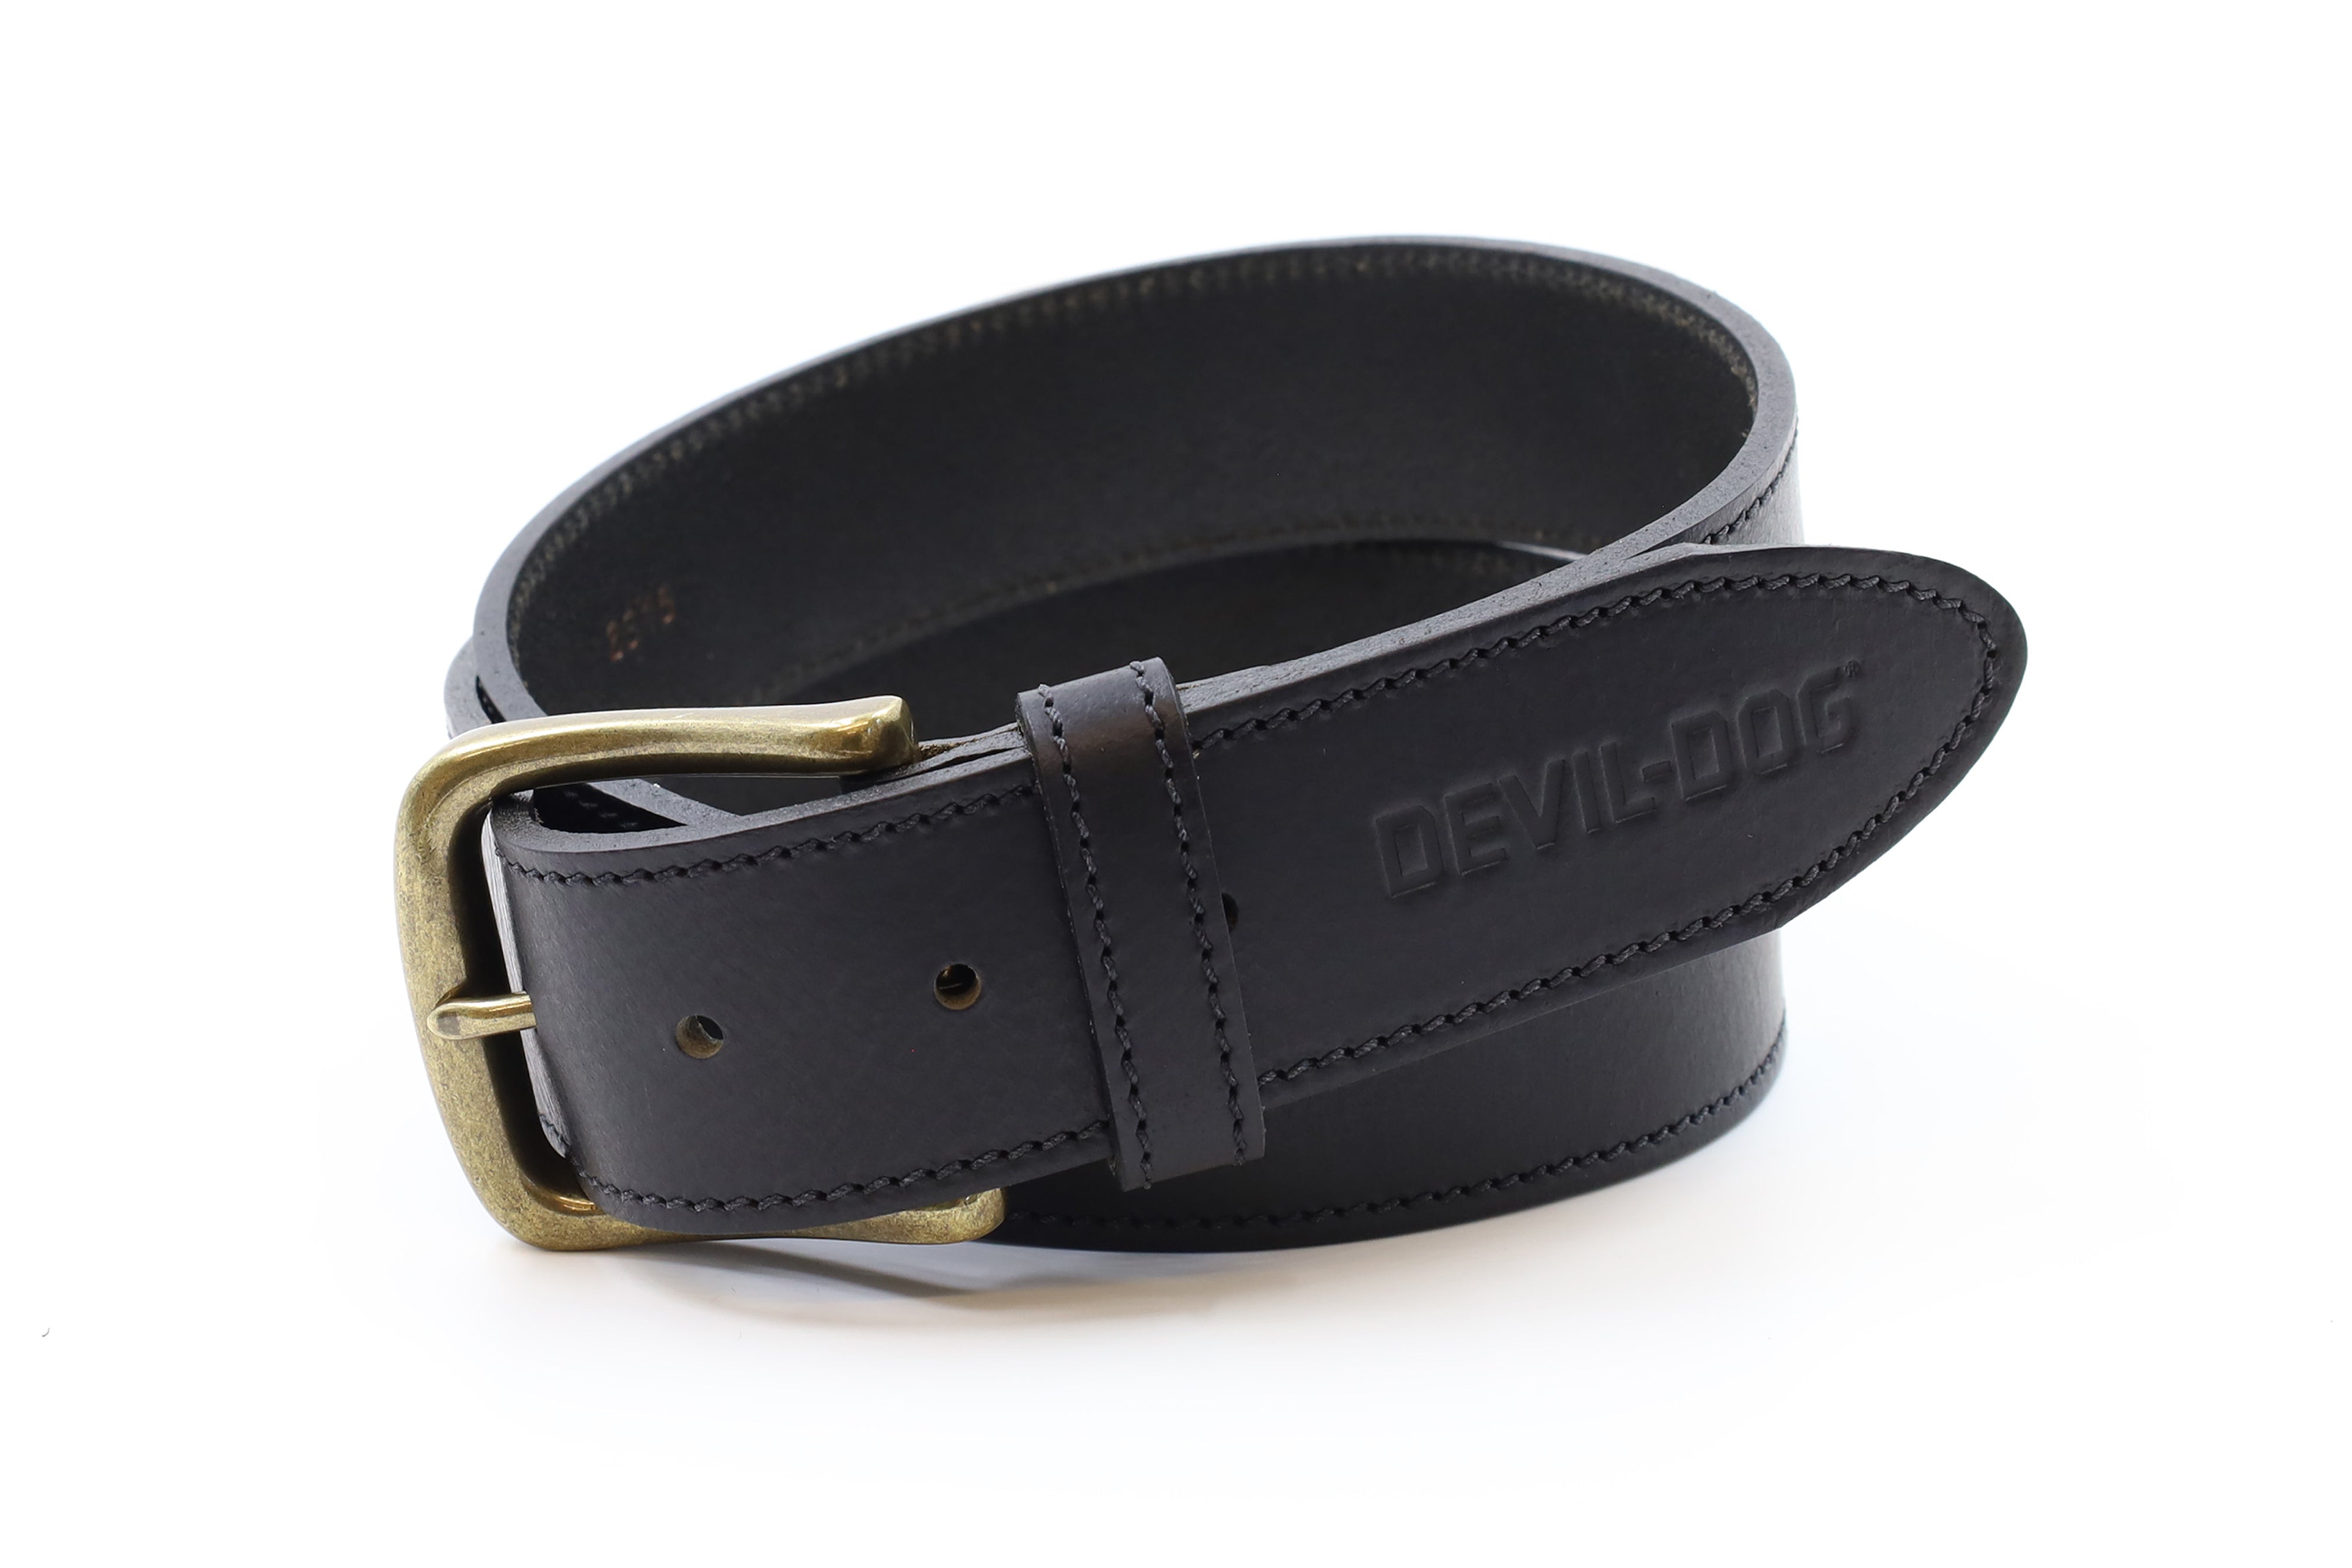 DEVIL-DOG® Leather Belt - Black with Brass Buckle – DEVIL-DOG